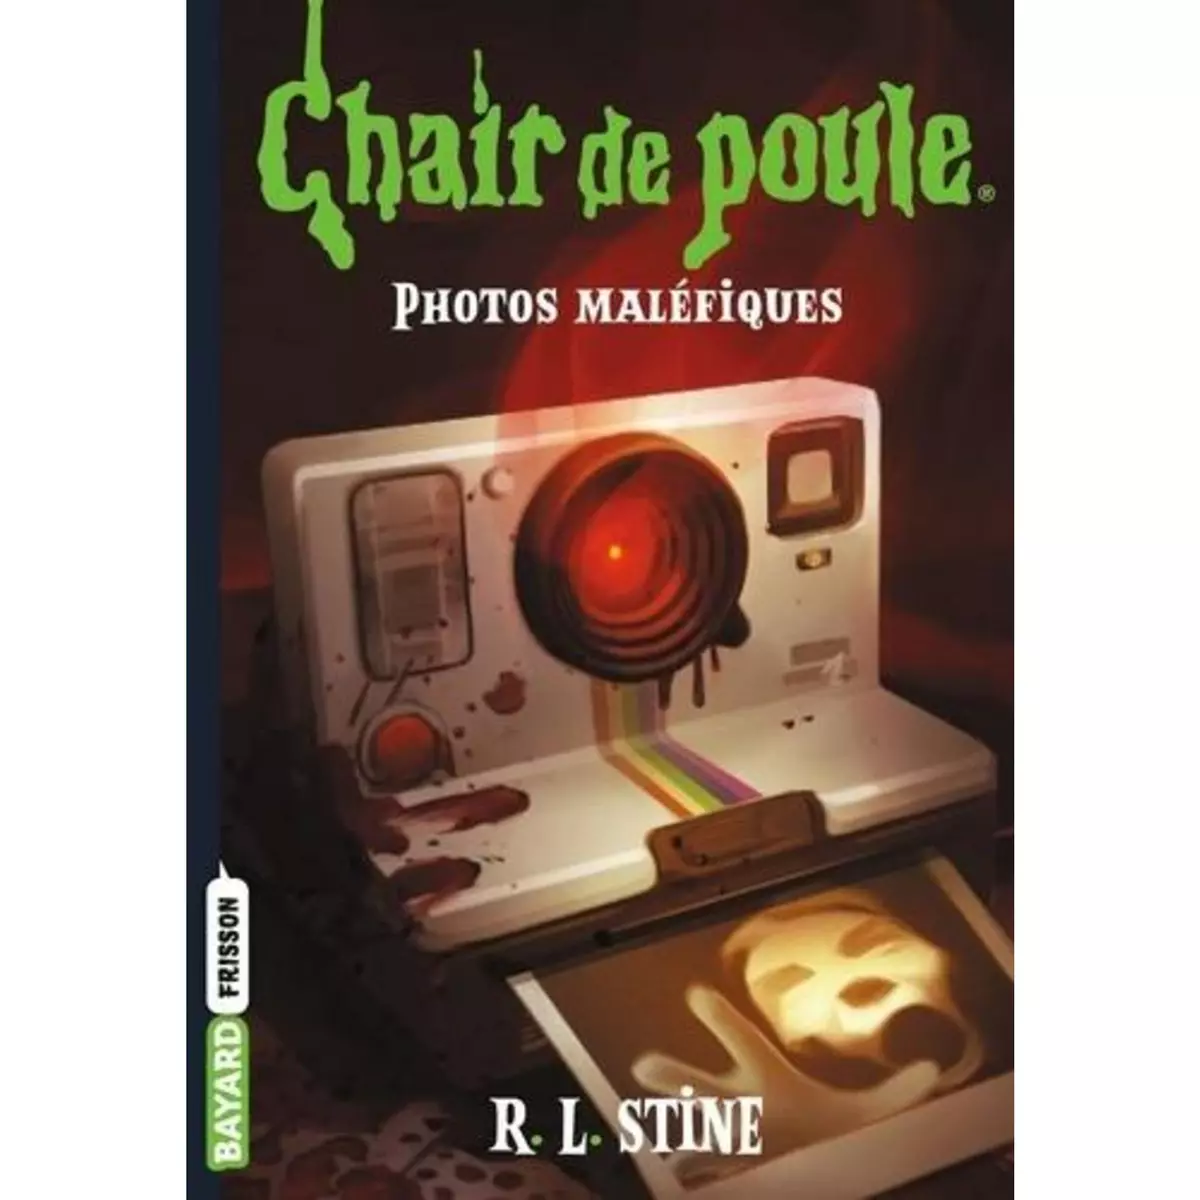  CHAIR DE POULE TOME 3 : PHOTOS MALEFIQUES, Stine R. L.